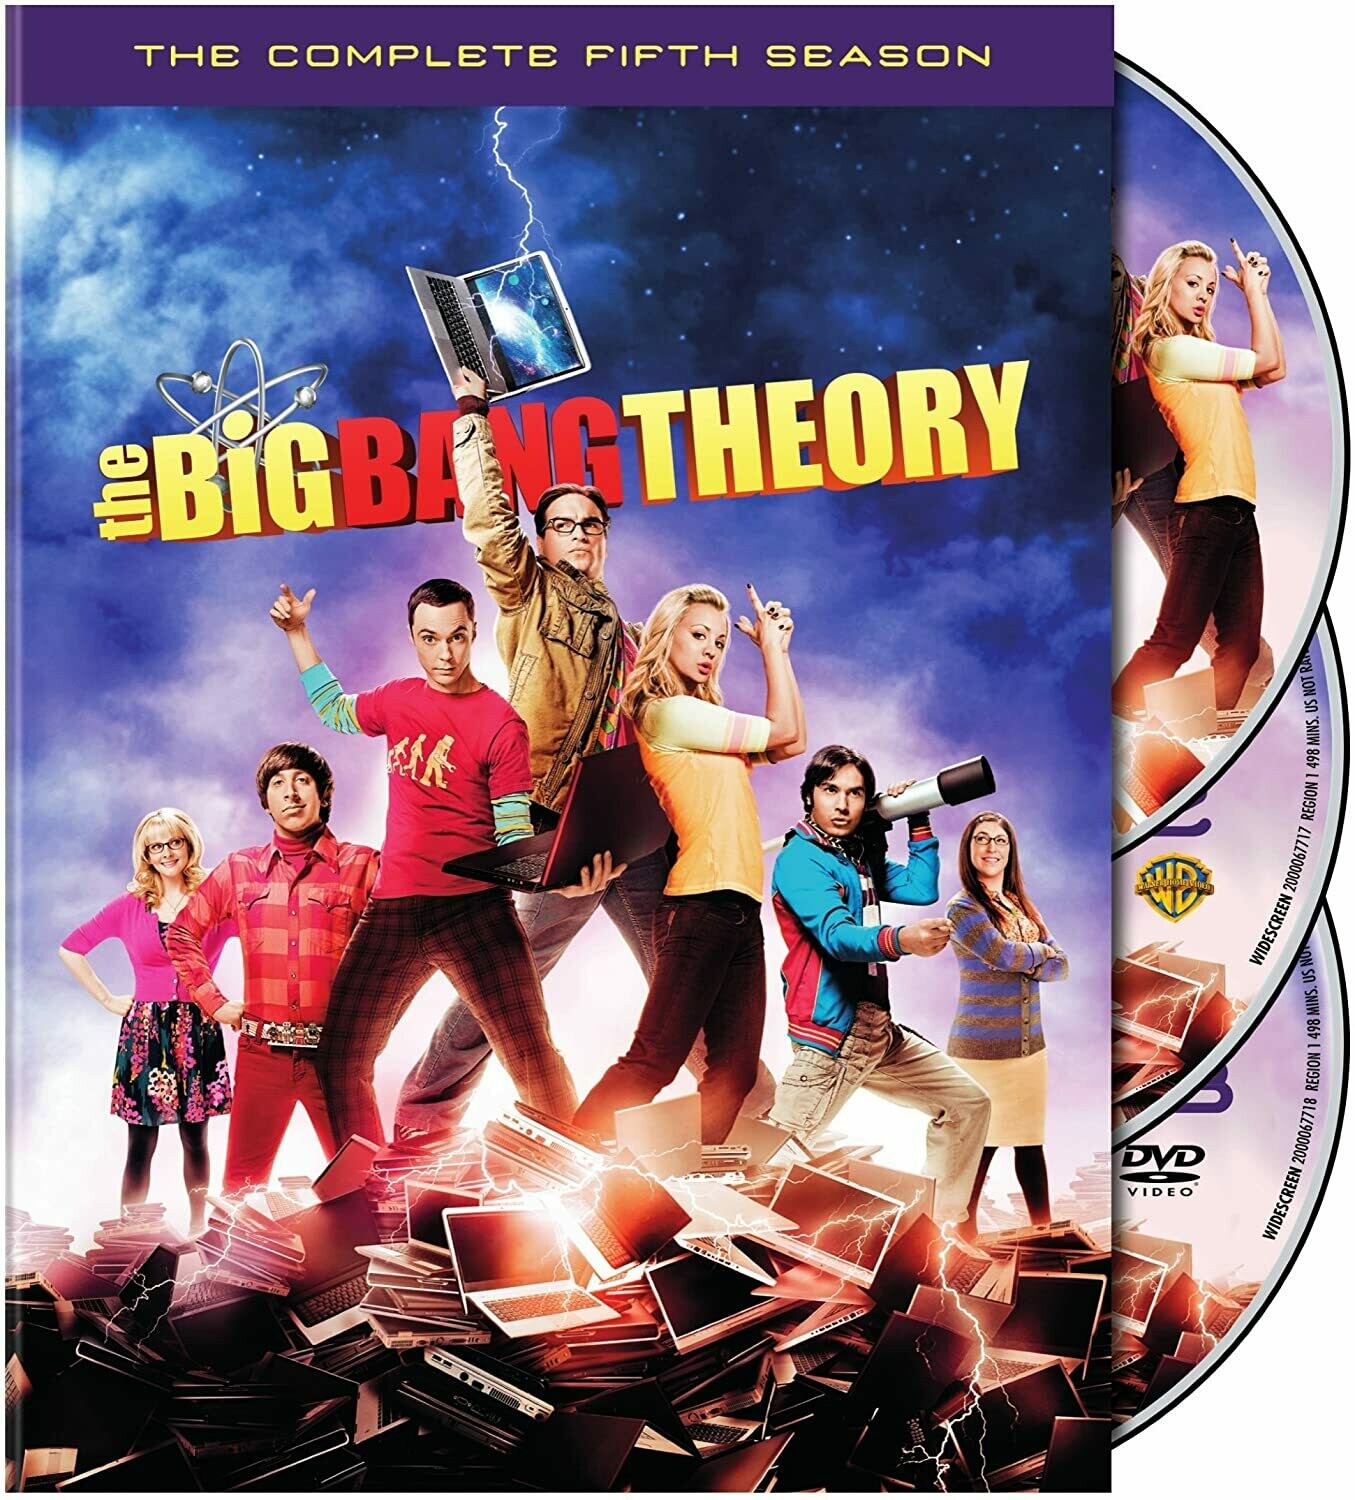 Big Bang Theory Season Five (7 day rental)